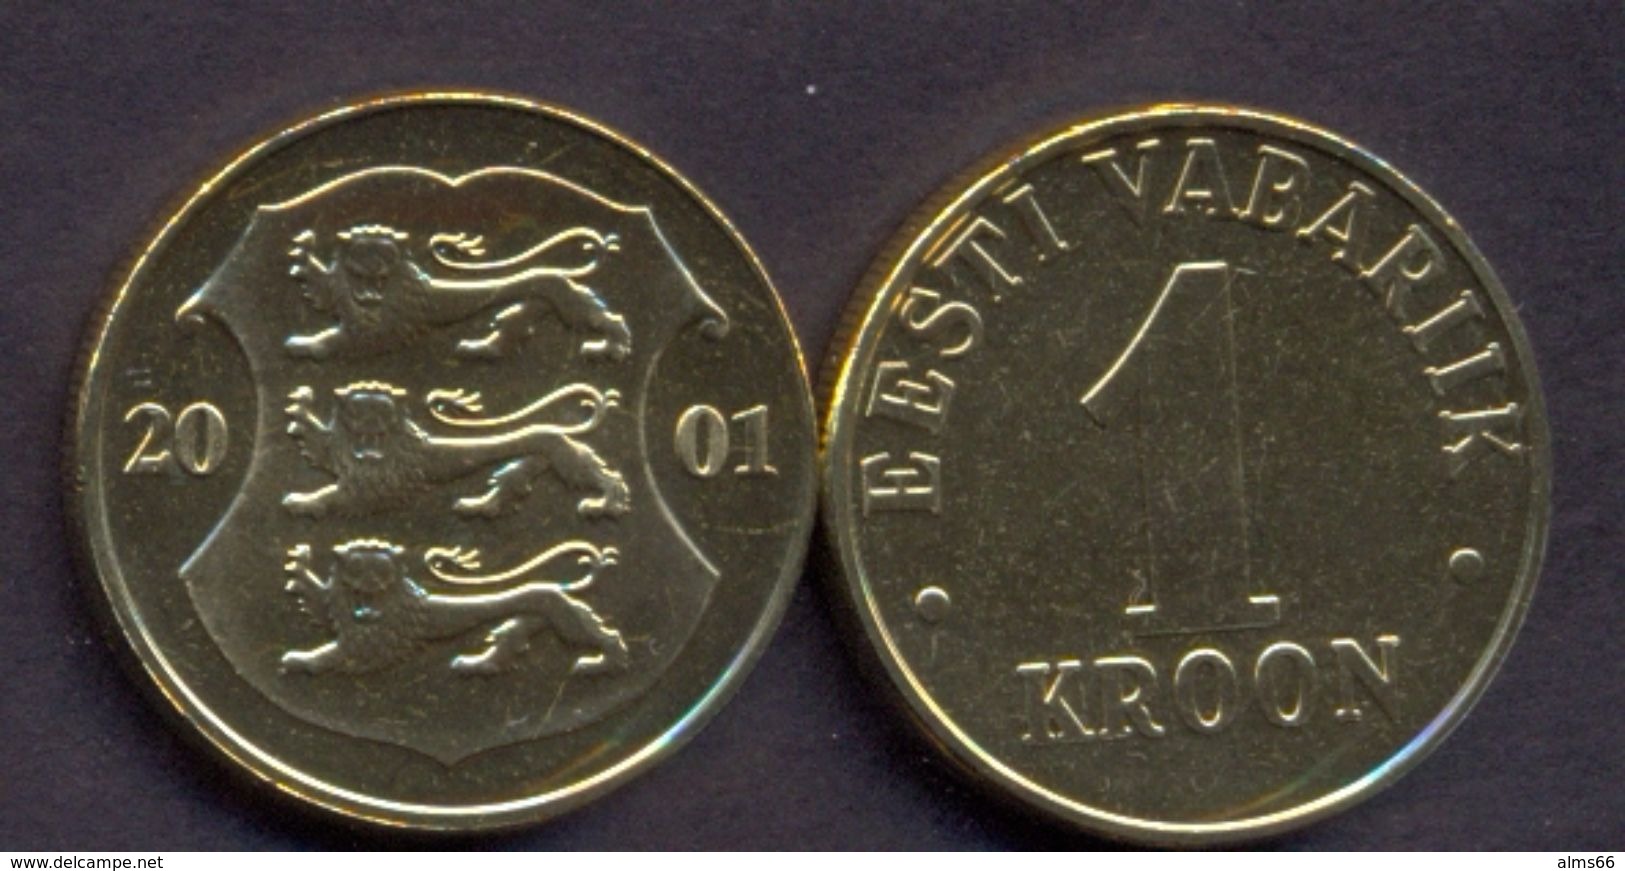 Estonia 1 Kroon 2001 UNC - Estonia